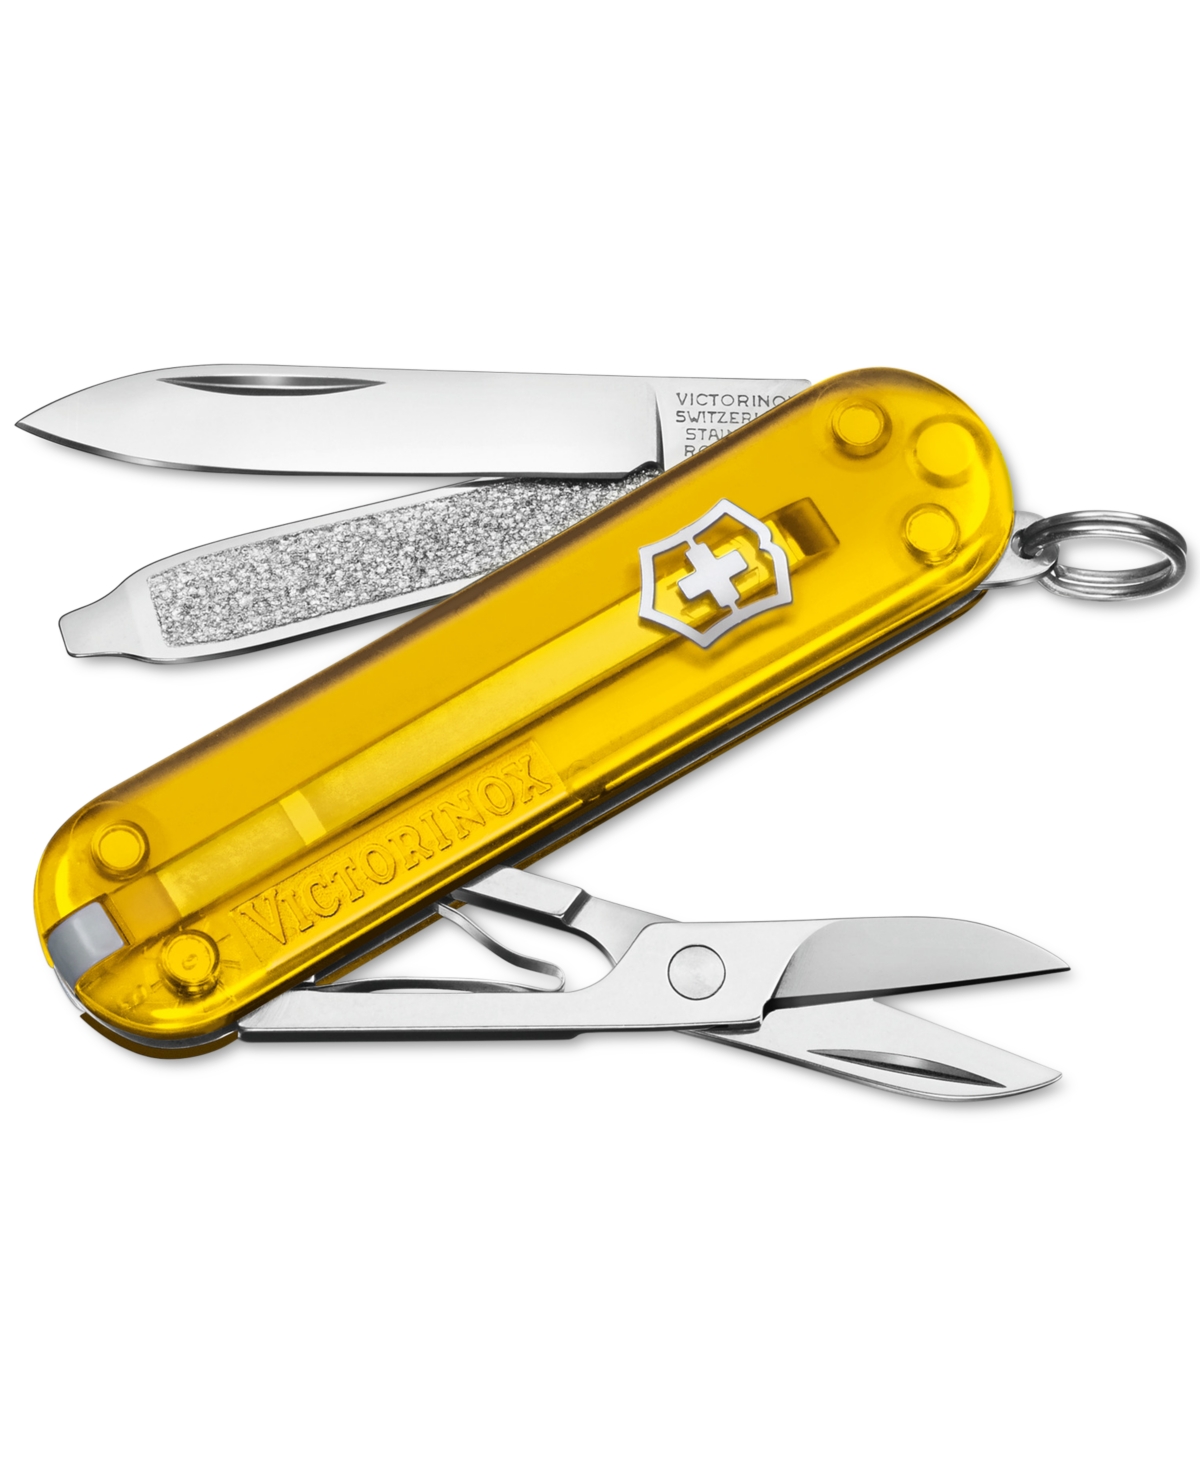 Swiss Army Classic Sd Pocketknife, Tuscan Sun - Tuscan Sun